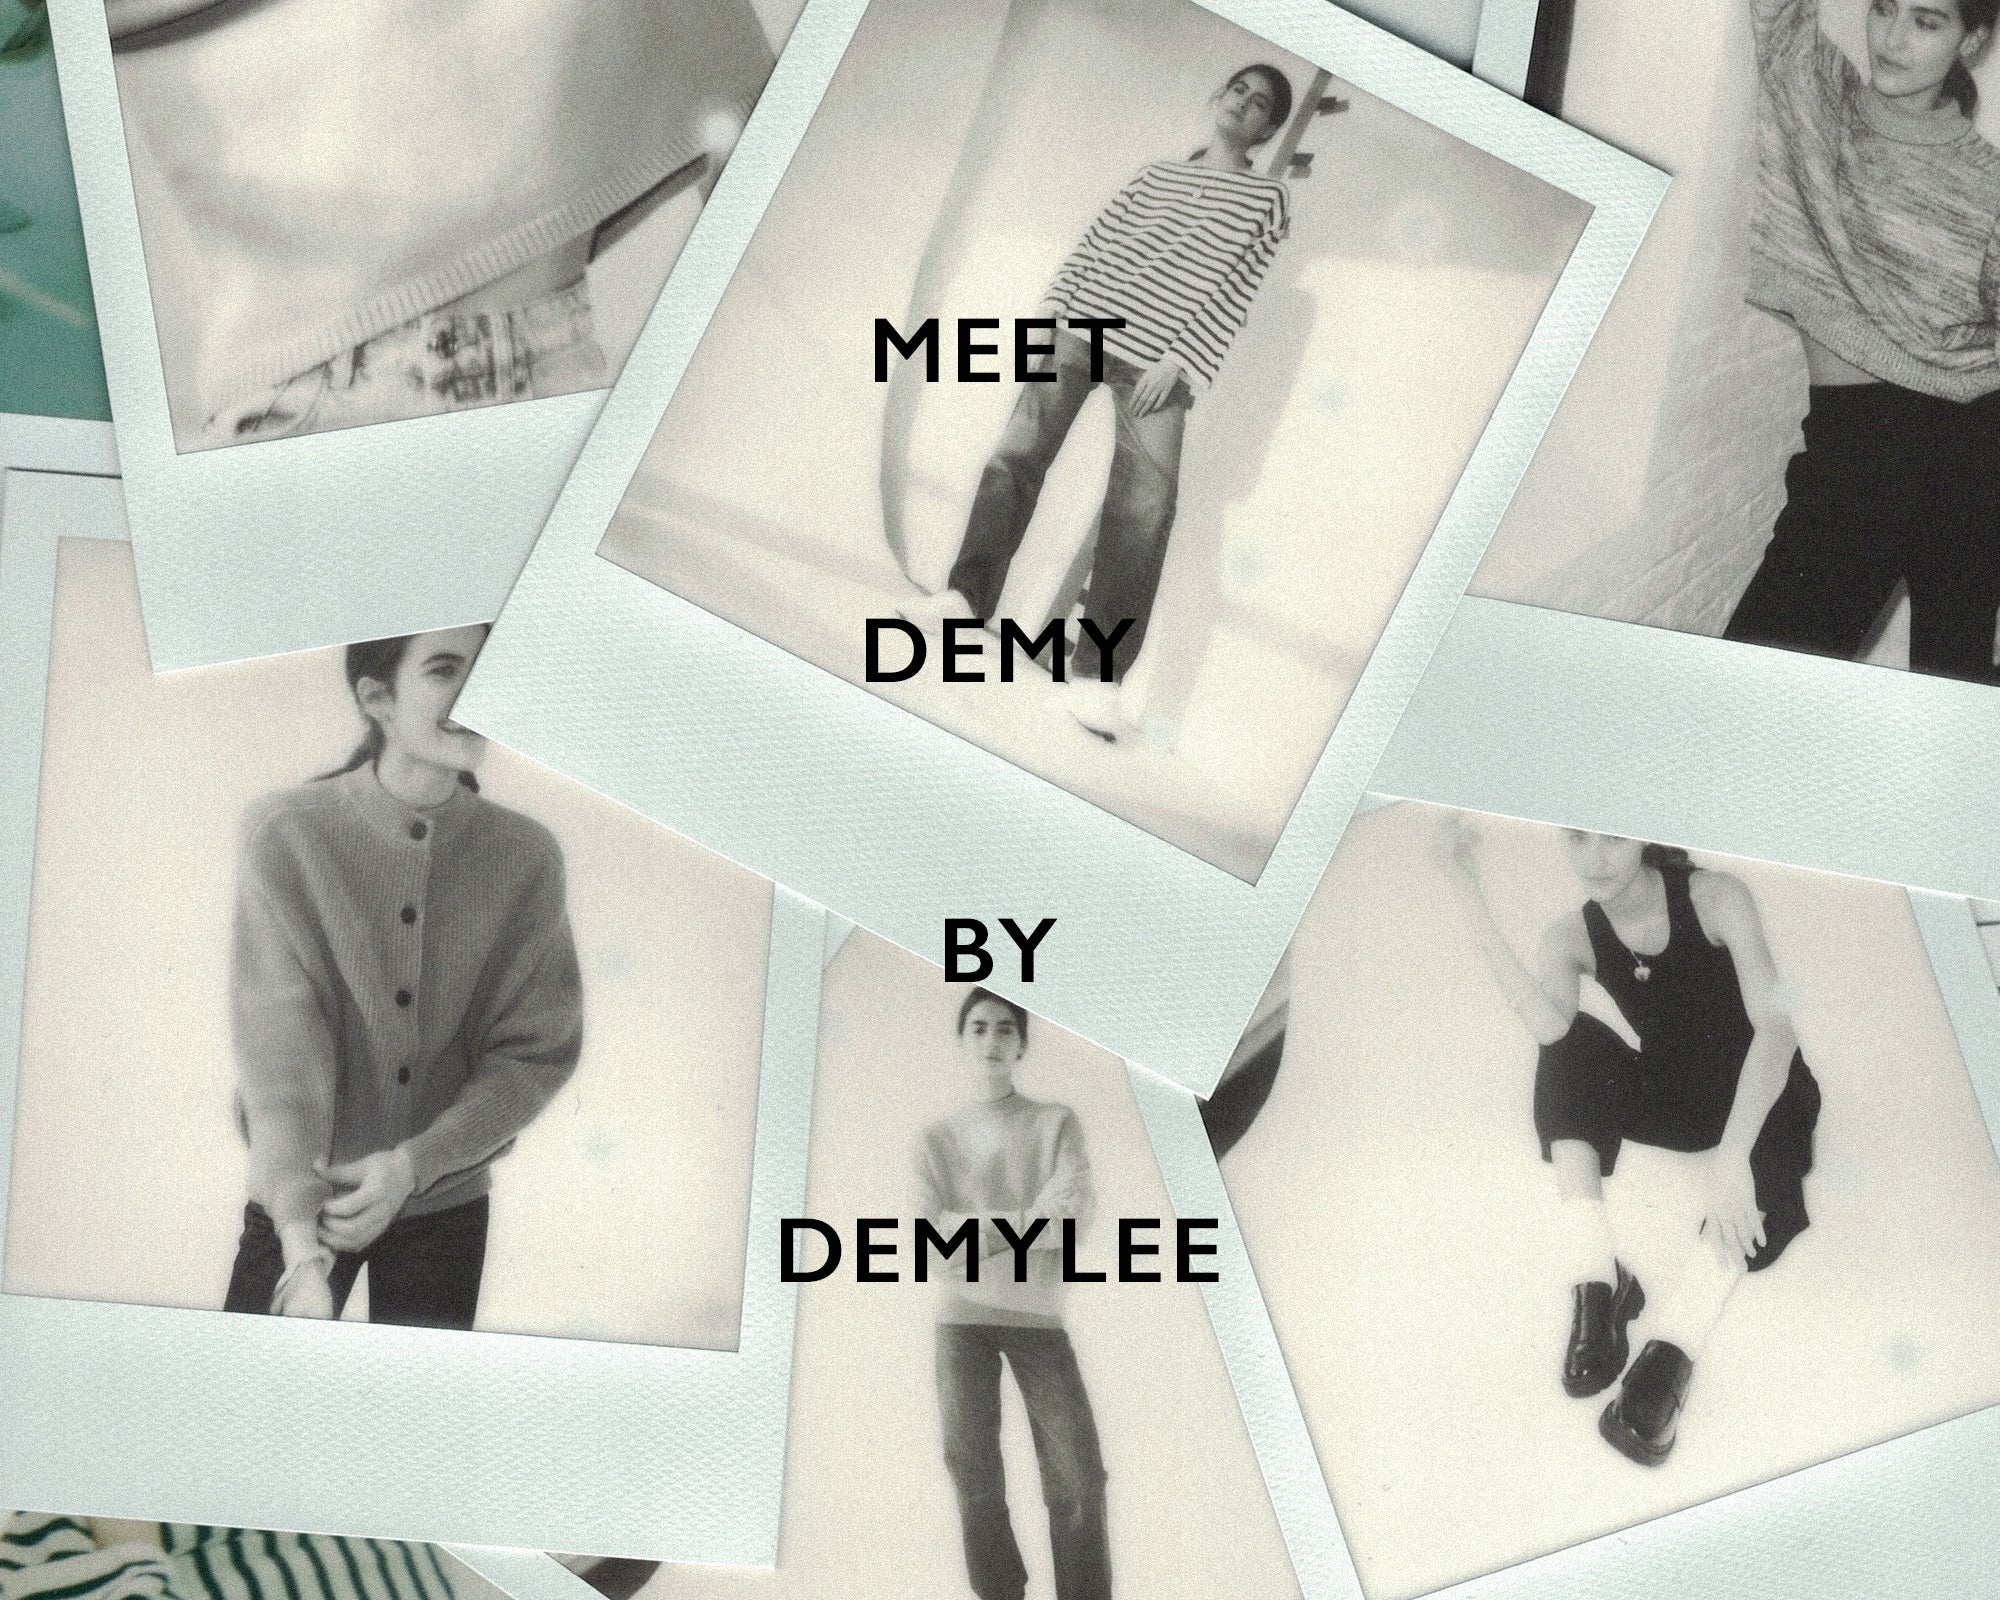 MEET DEMY BY DEMYLEE